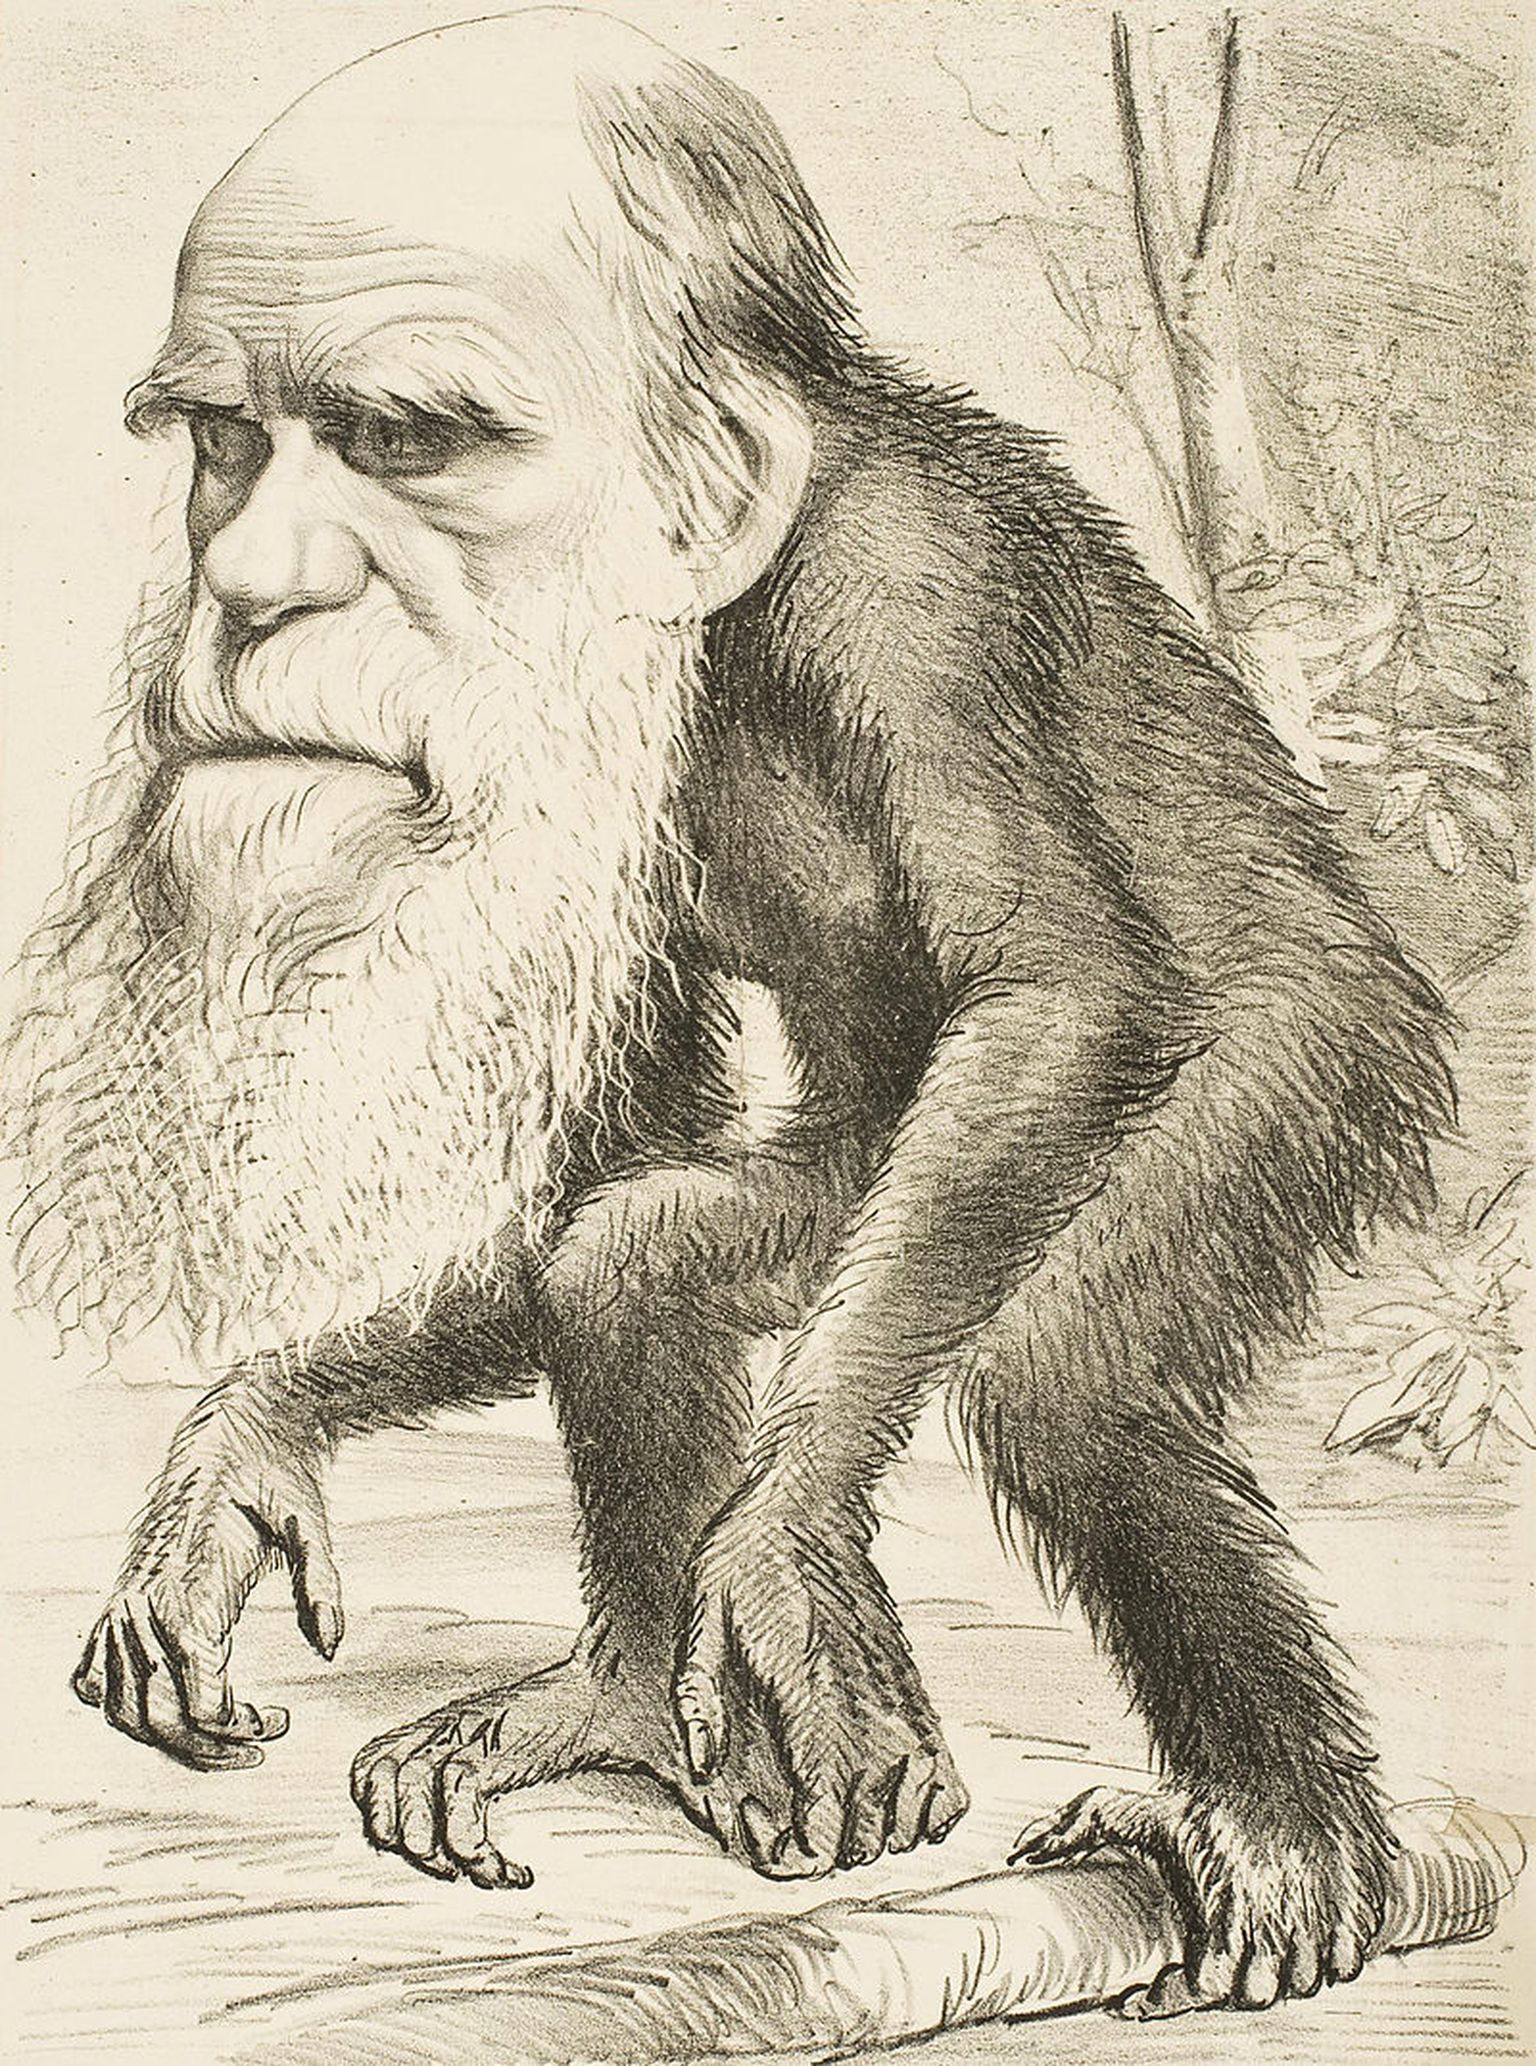 Čārlza Darvina karikatūra.